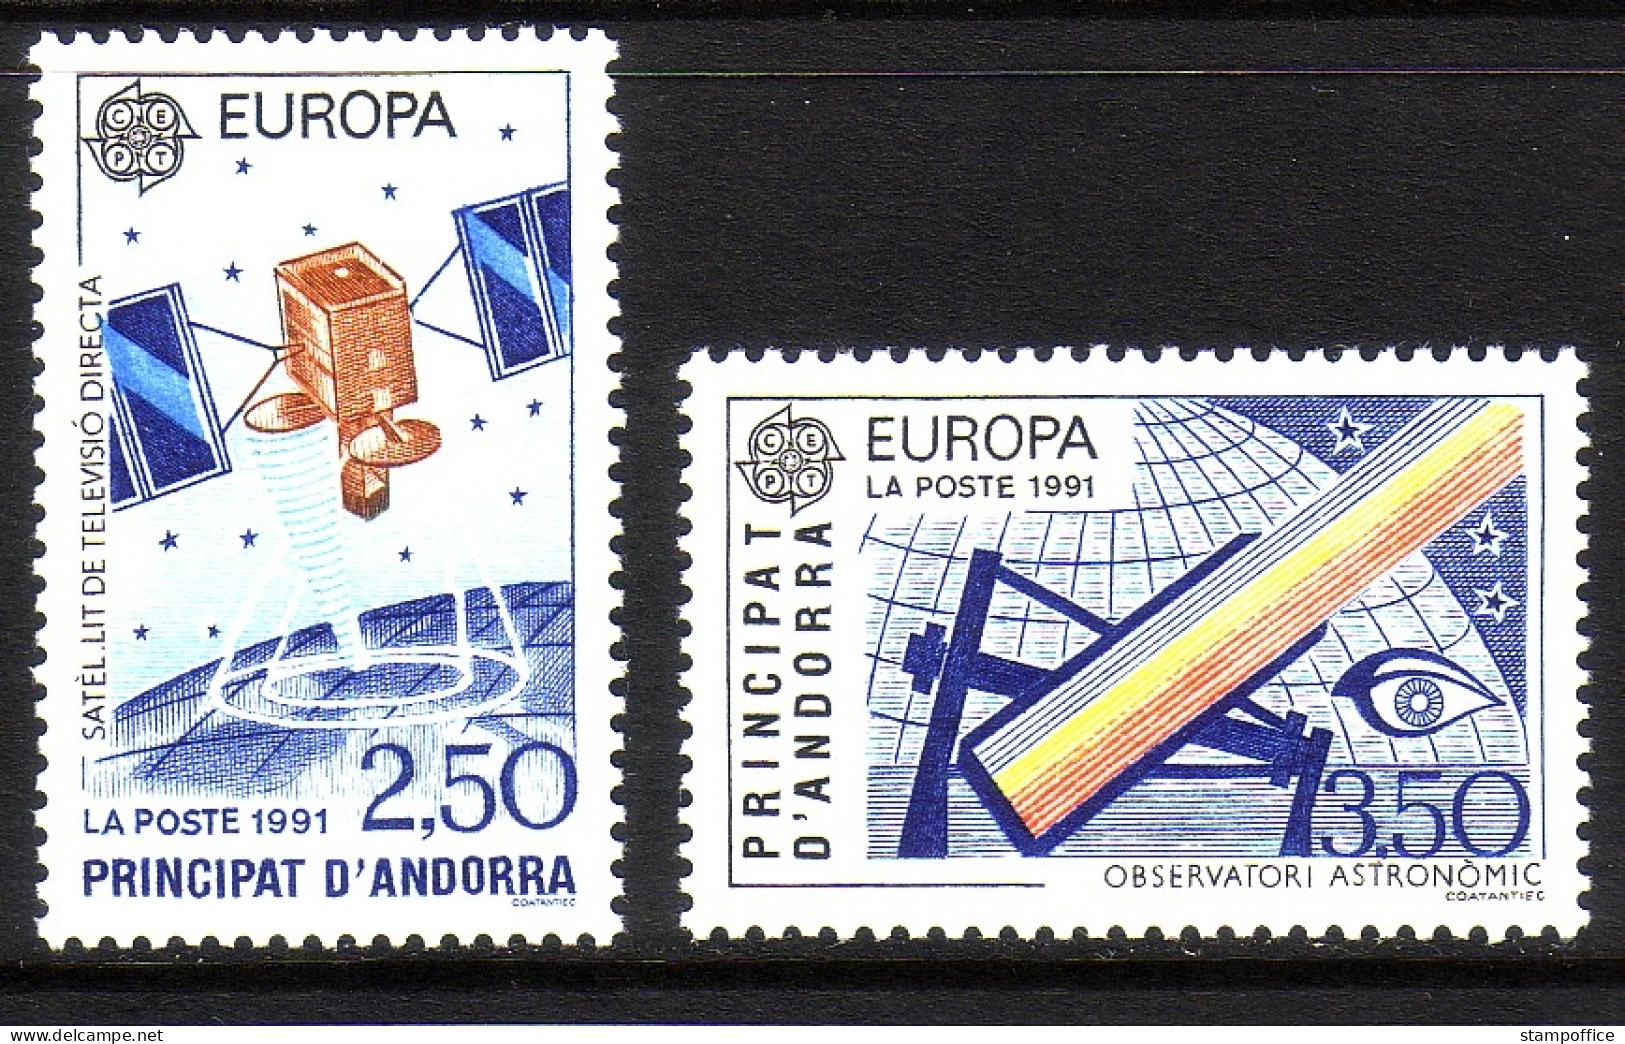 ANDORRA FRANZÖSISCH MI-NR. 423-424 POSTFRISCH(MINT) EUROPA 1991 EUROPÄISCHE WELTRAUMFAHRT SATELLIT - 1991